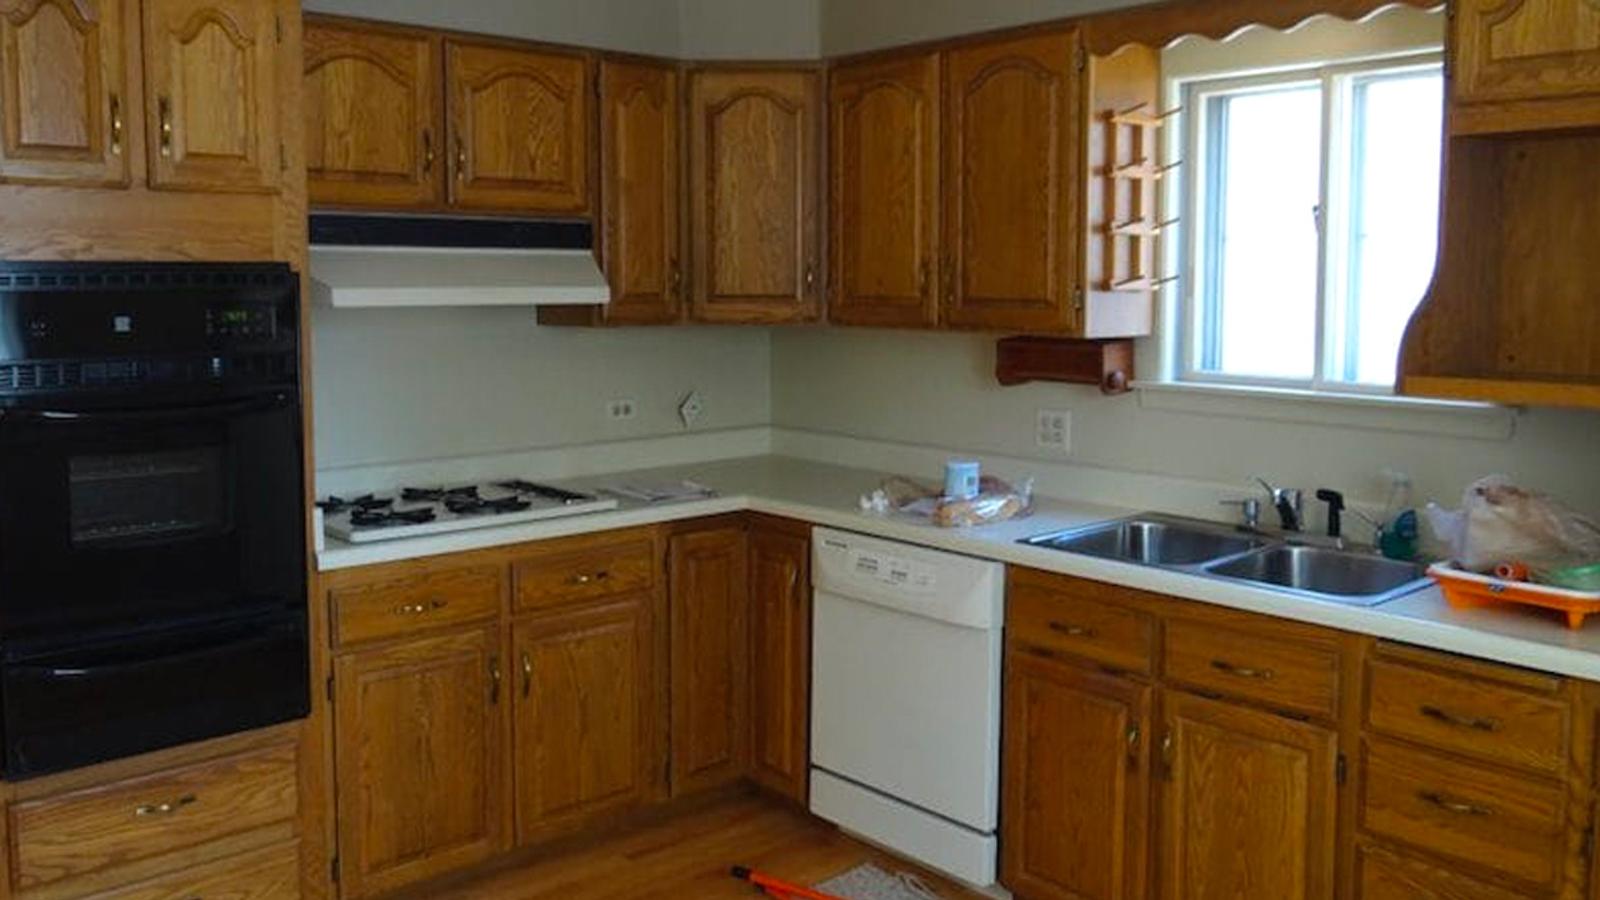 Un couple achète une maison avec une vieille cuisine affreuse, admirez comment ils l'ont transformé.